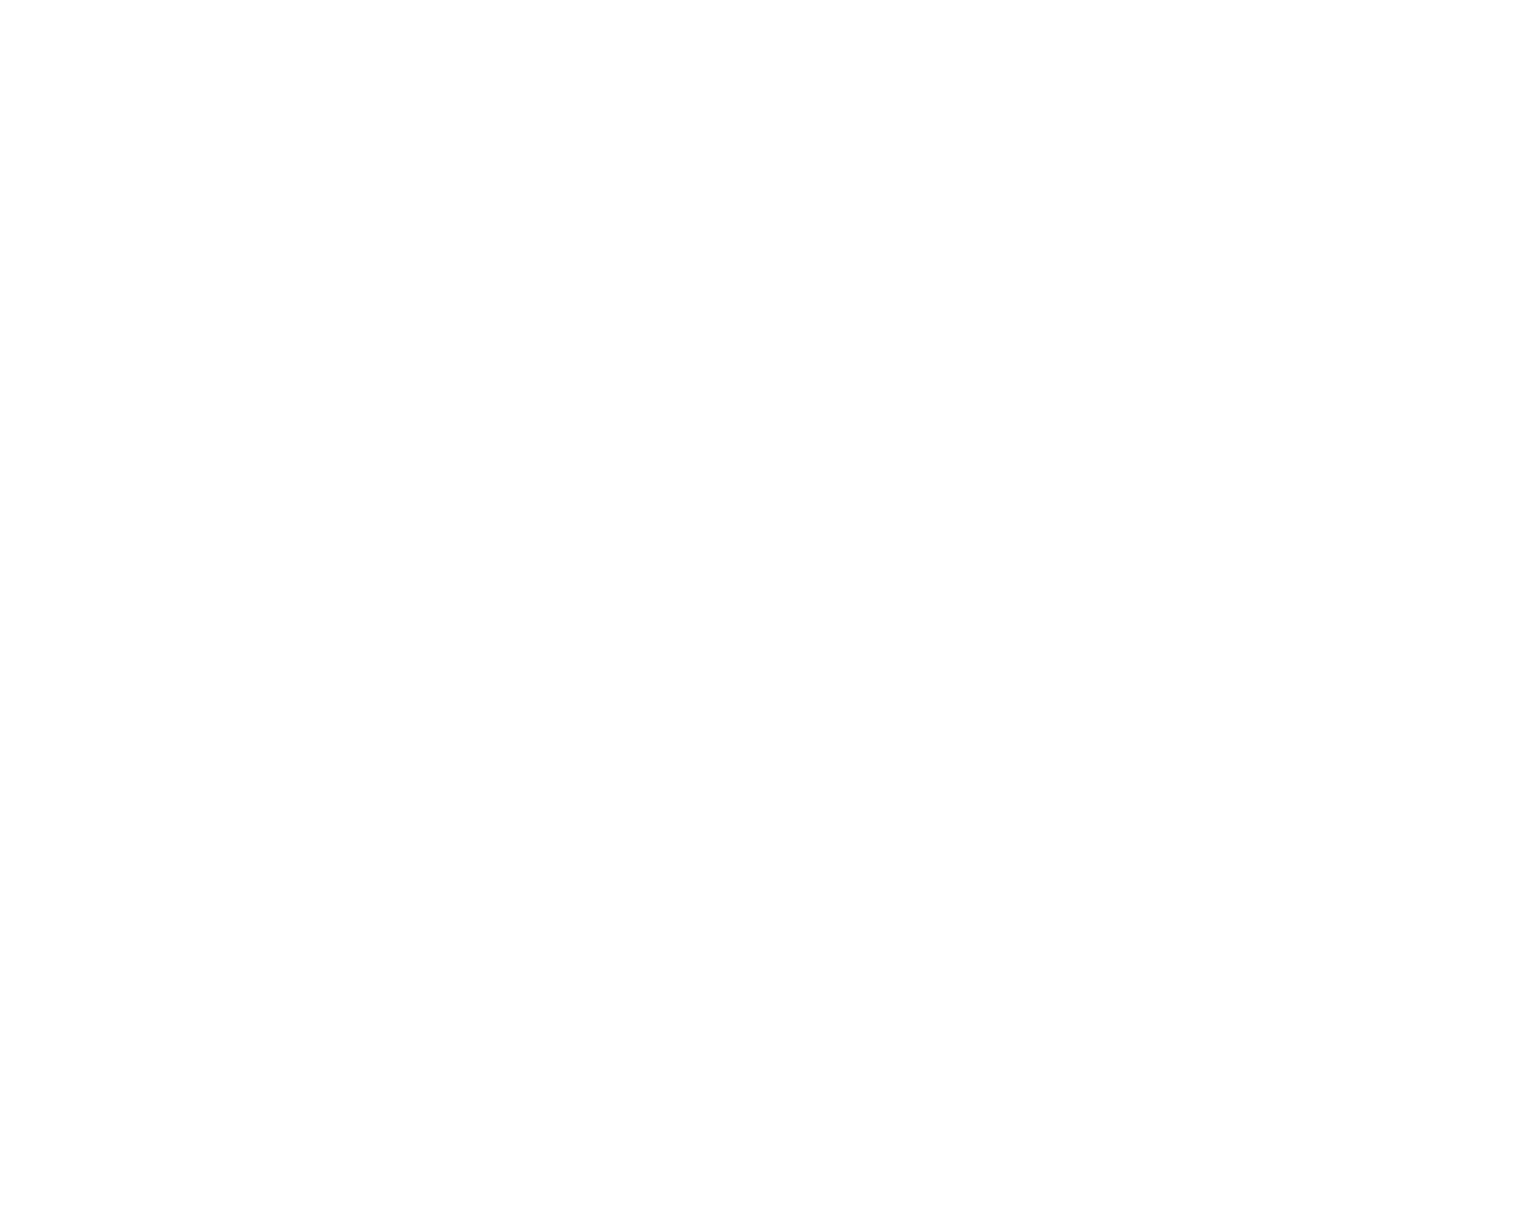 Sampo logo pour fonds sombres (PNG transparent)